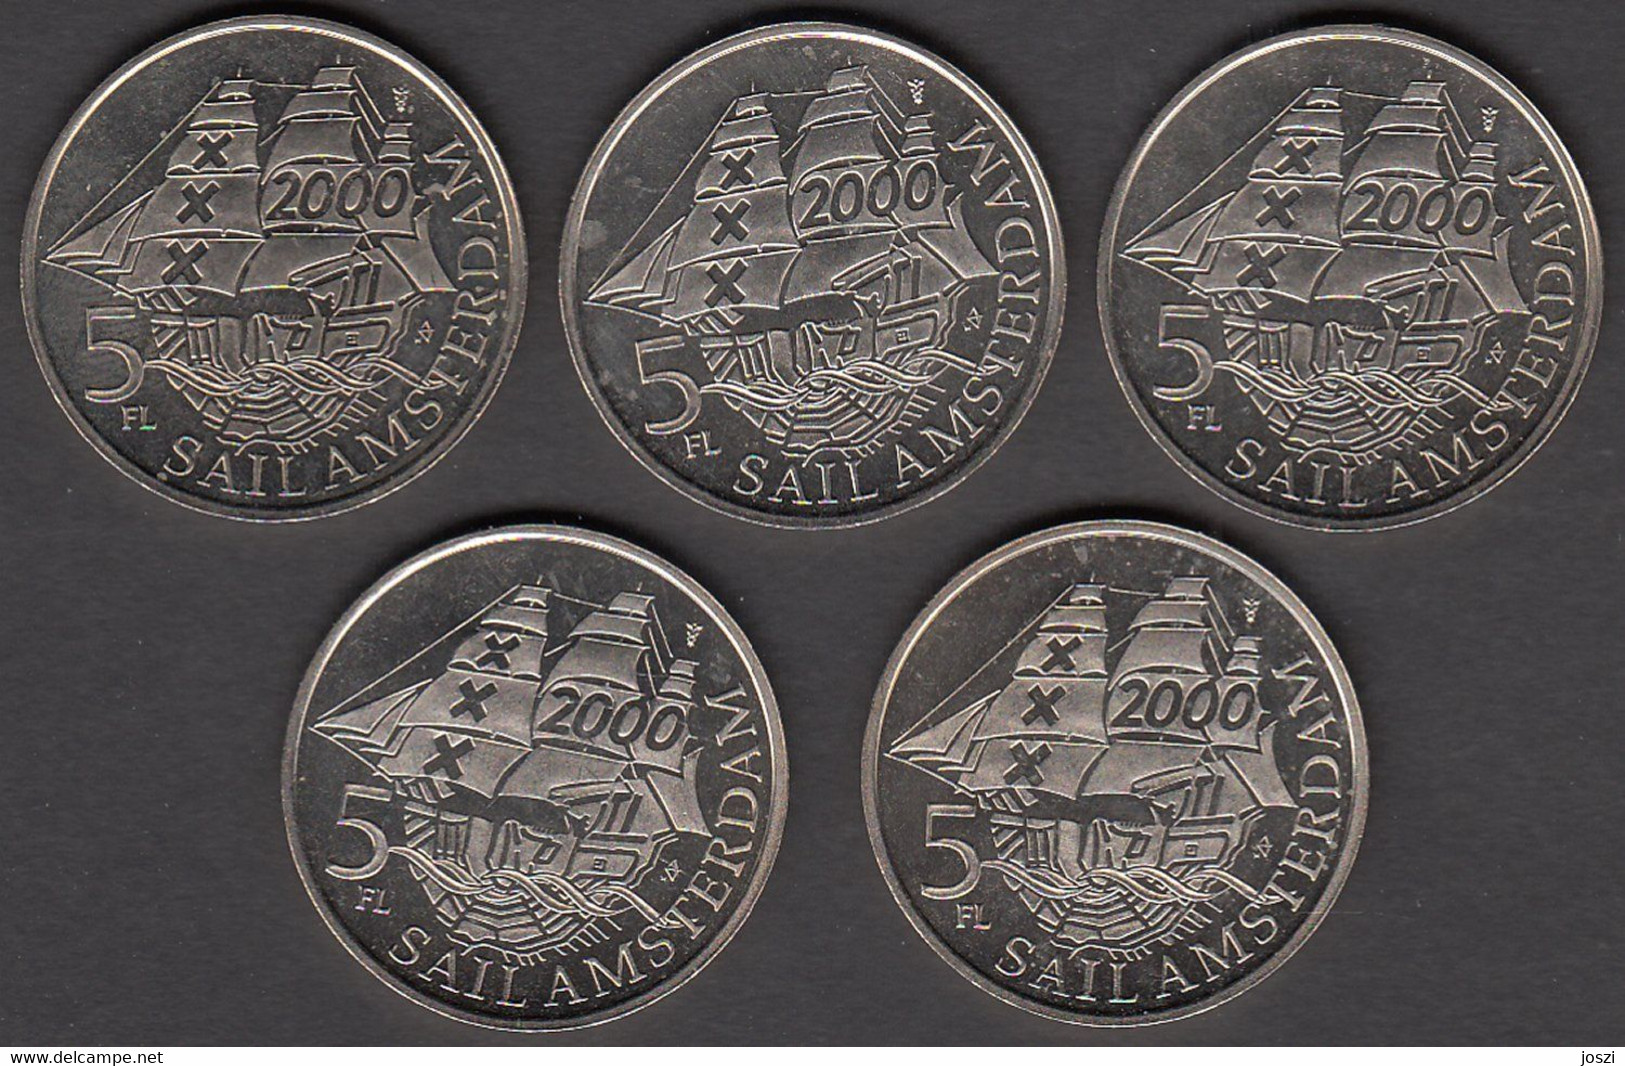 Nederland Set Penningen (5) Sail Amsterdam 2000 5 Florijn - Monedas Elongadas (elongated Coins)